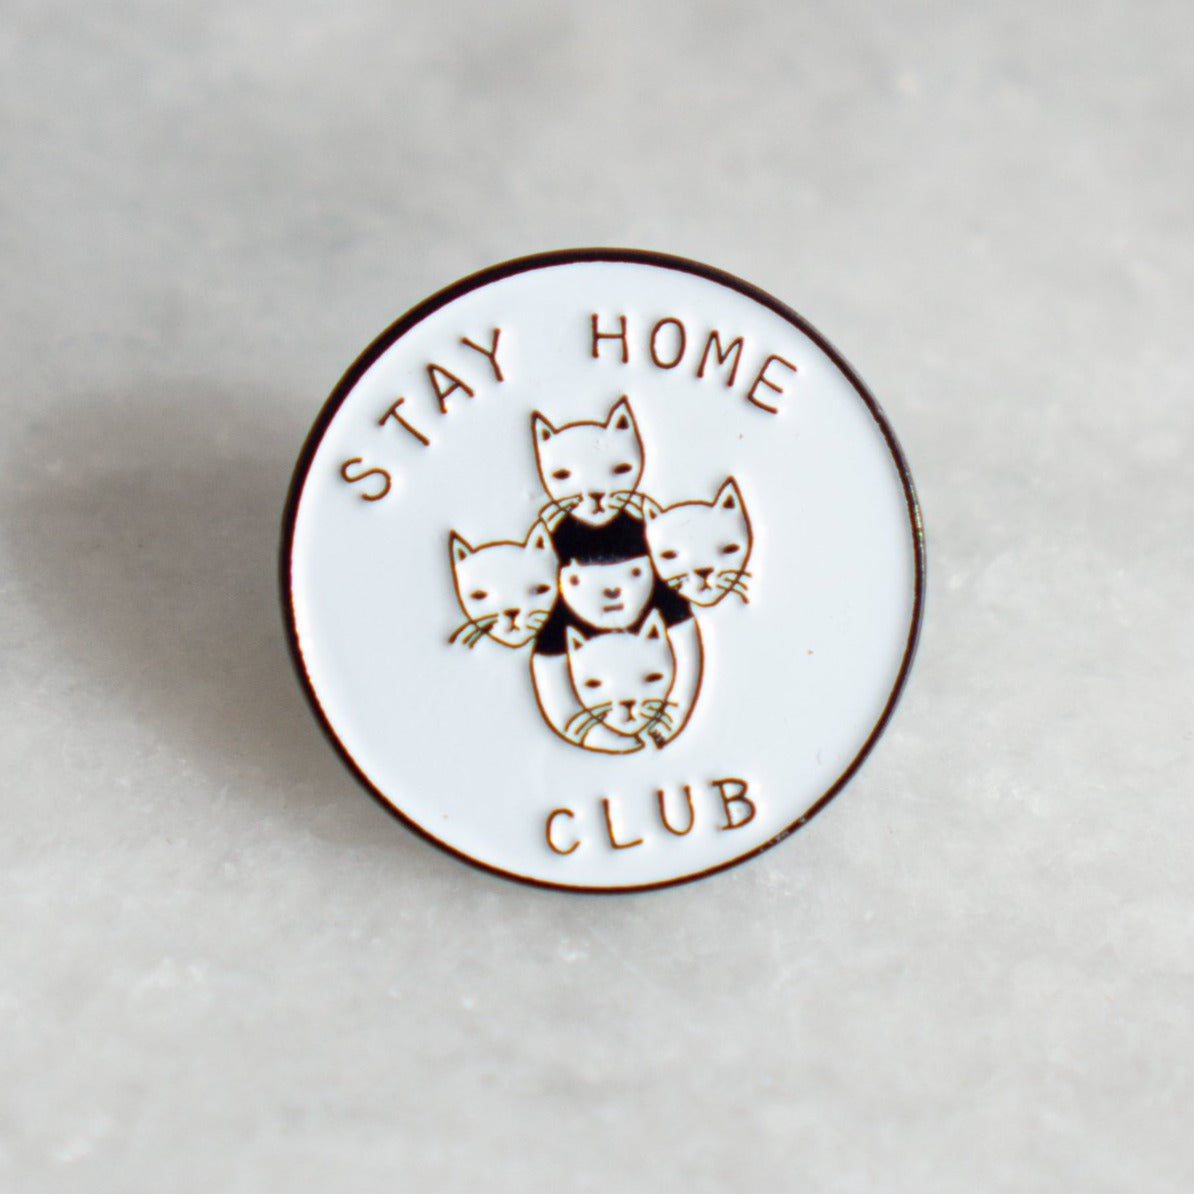 Stay Home Club Enamel Pin Badge